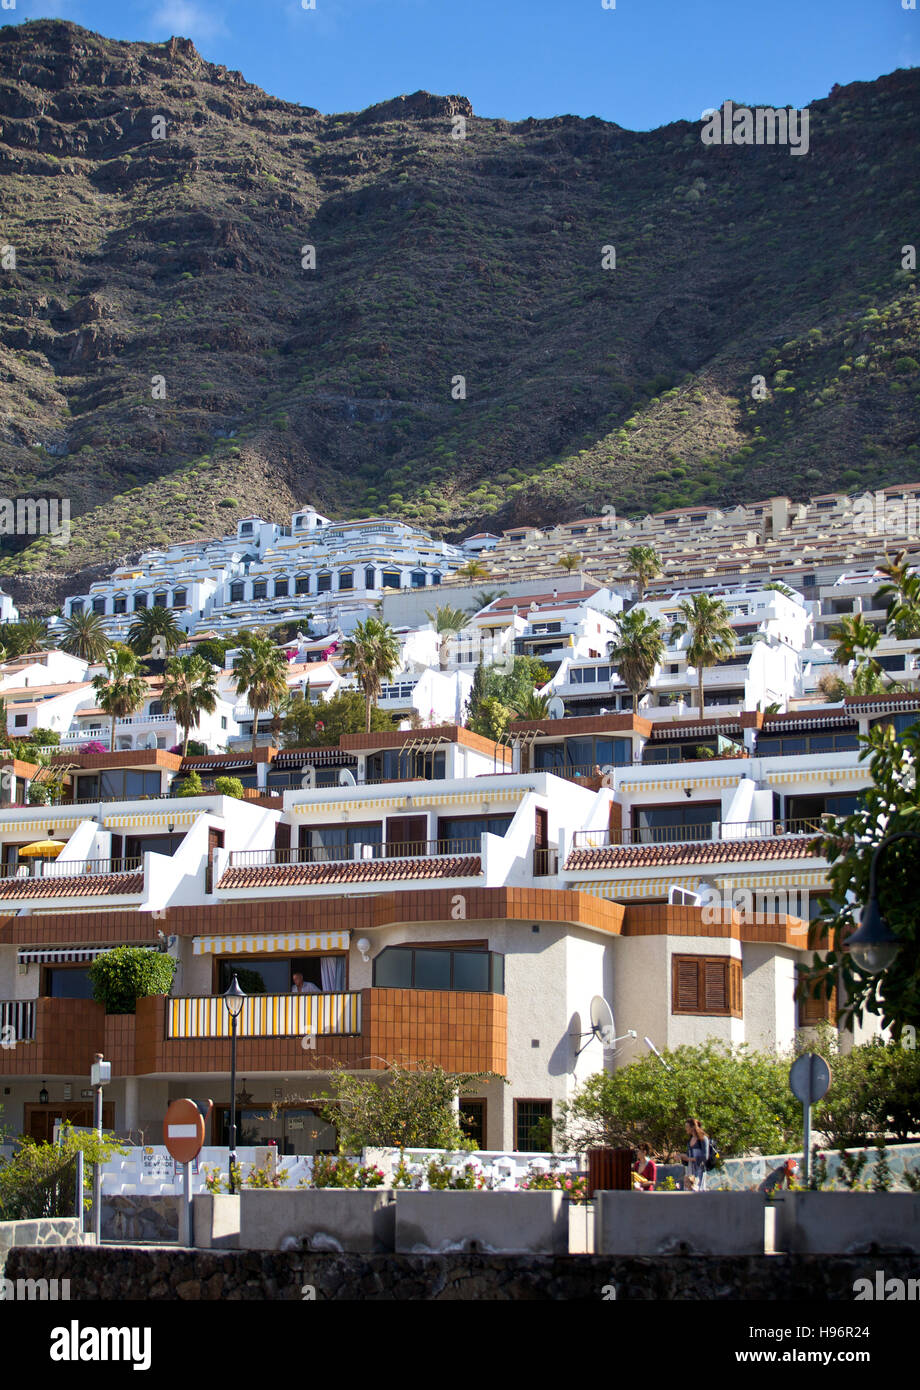 Zona de viviendas, casas de vacaciones en Puerto de Santiago, Tenerife, España Foto de stock